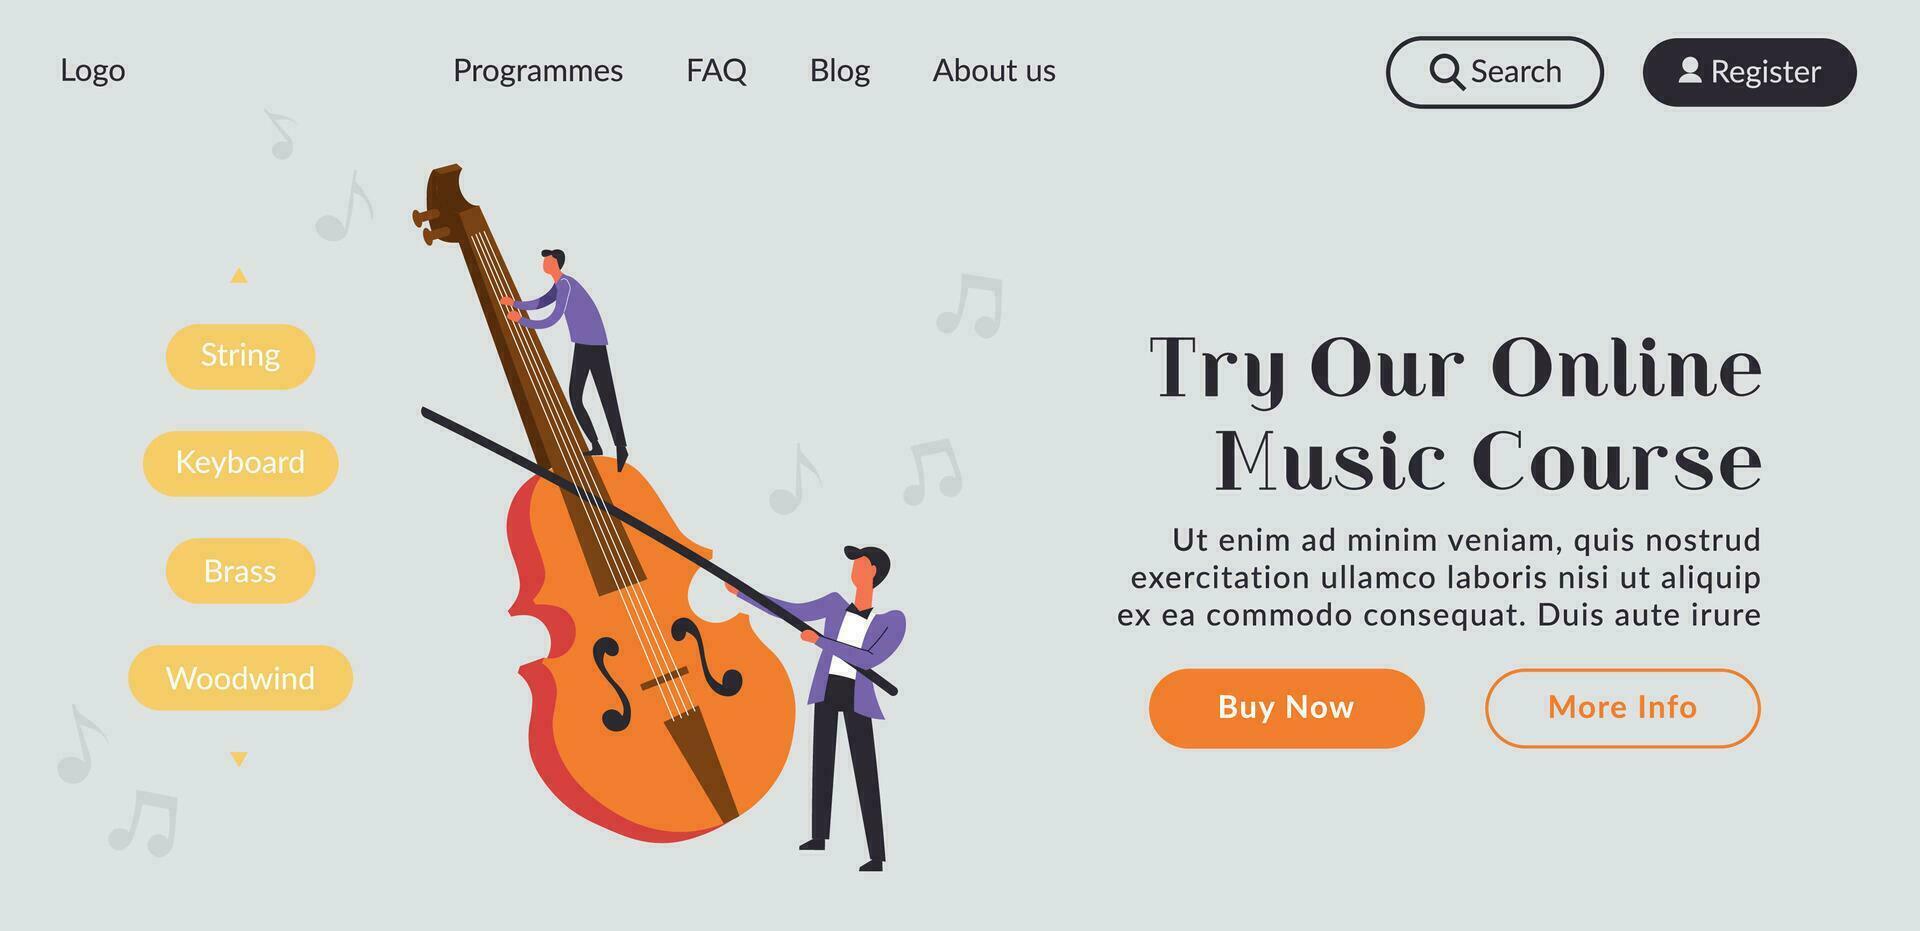 en ligne la musique cours et Des classes sur violon, site Internet vecteur